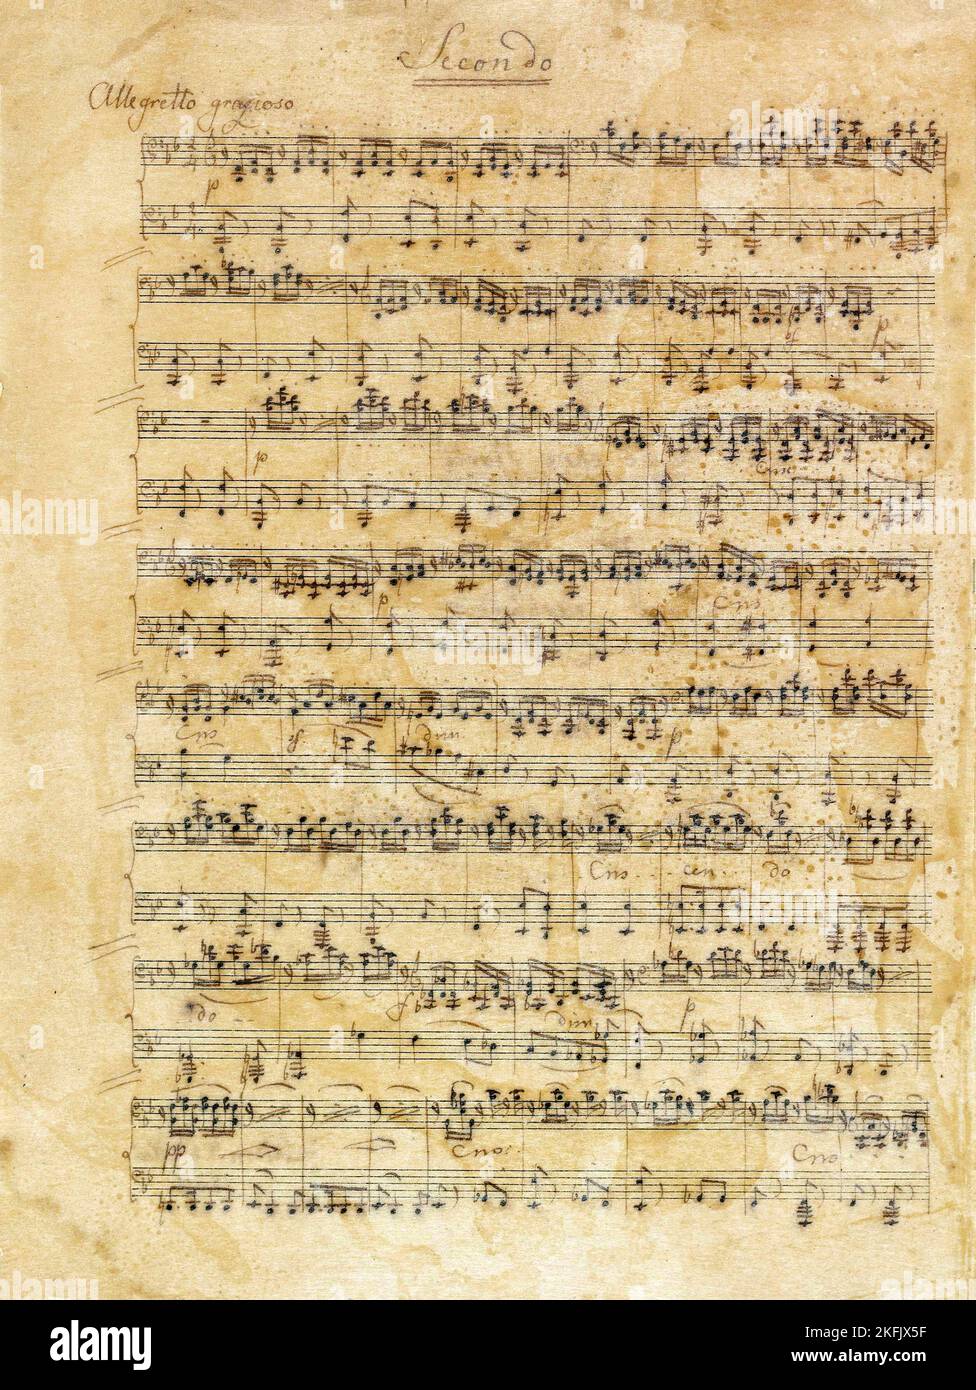 Felix Mendelssohn-Bartholdy; Lied ohne Worte für Klavier zu vier Händen; 1847; Musikhandschrift; Königliche Sammlung des Vereinigten Königreichs. Stockfoto